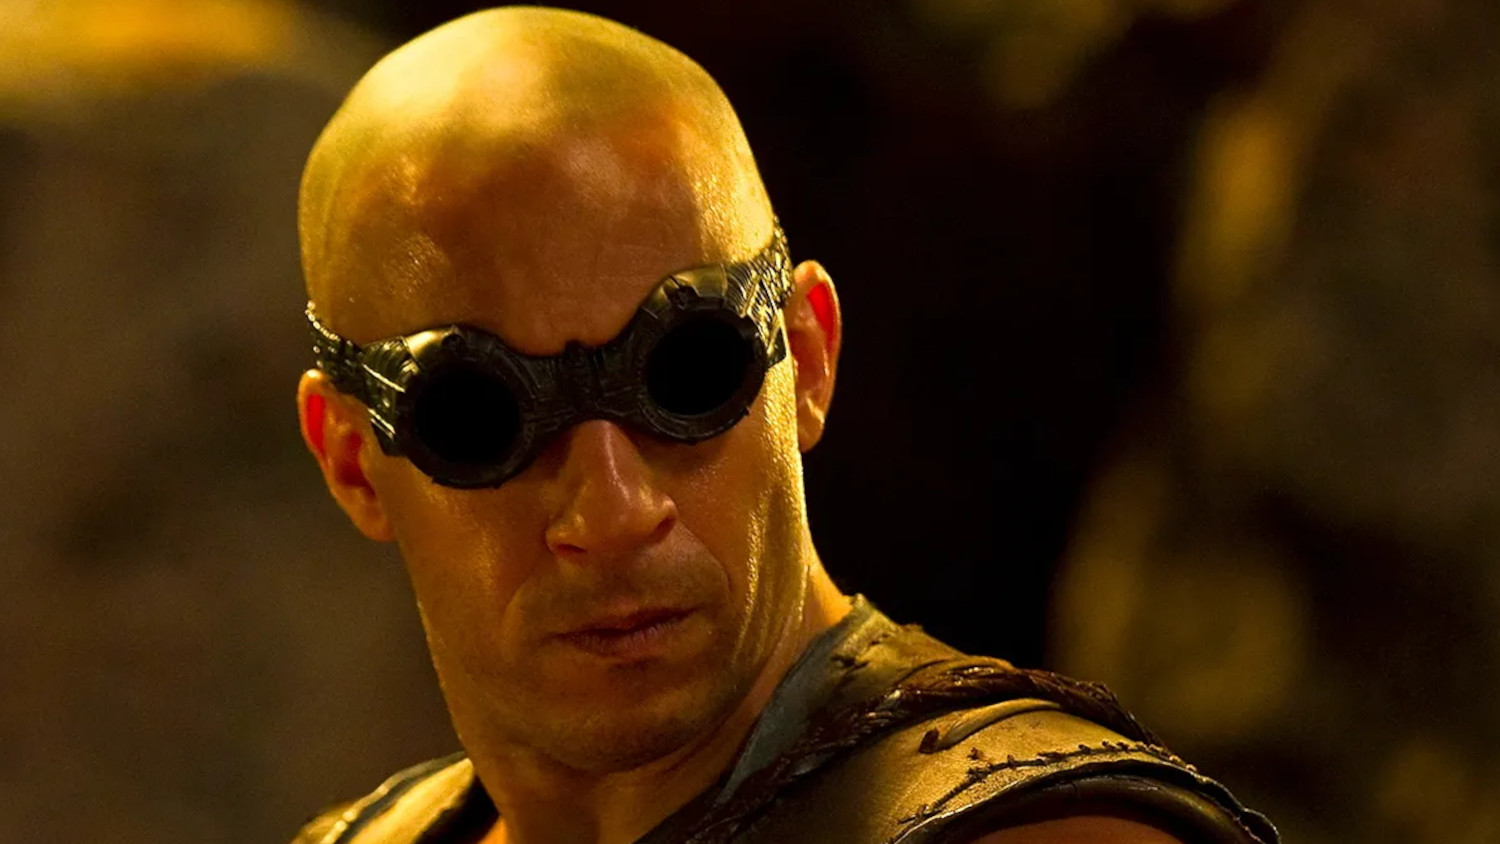 Riddick 4 Films In August With Vin Diesel